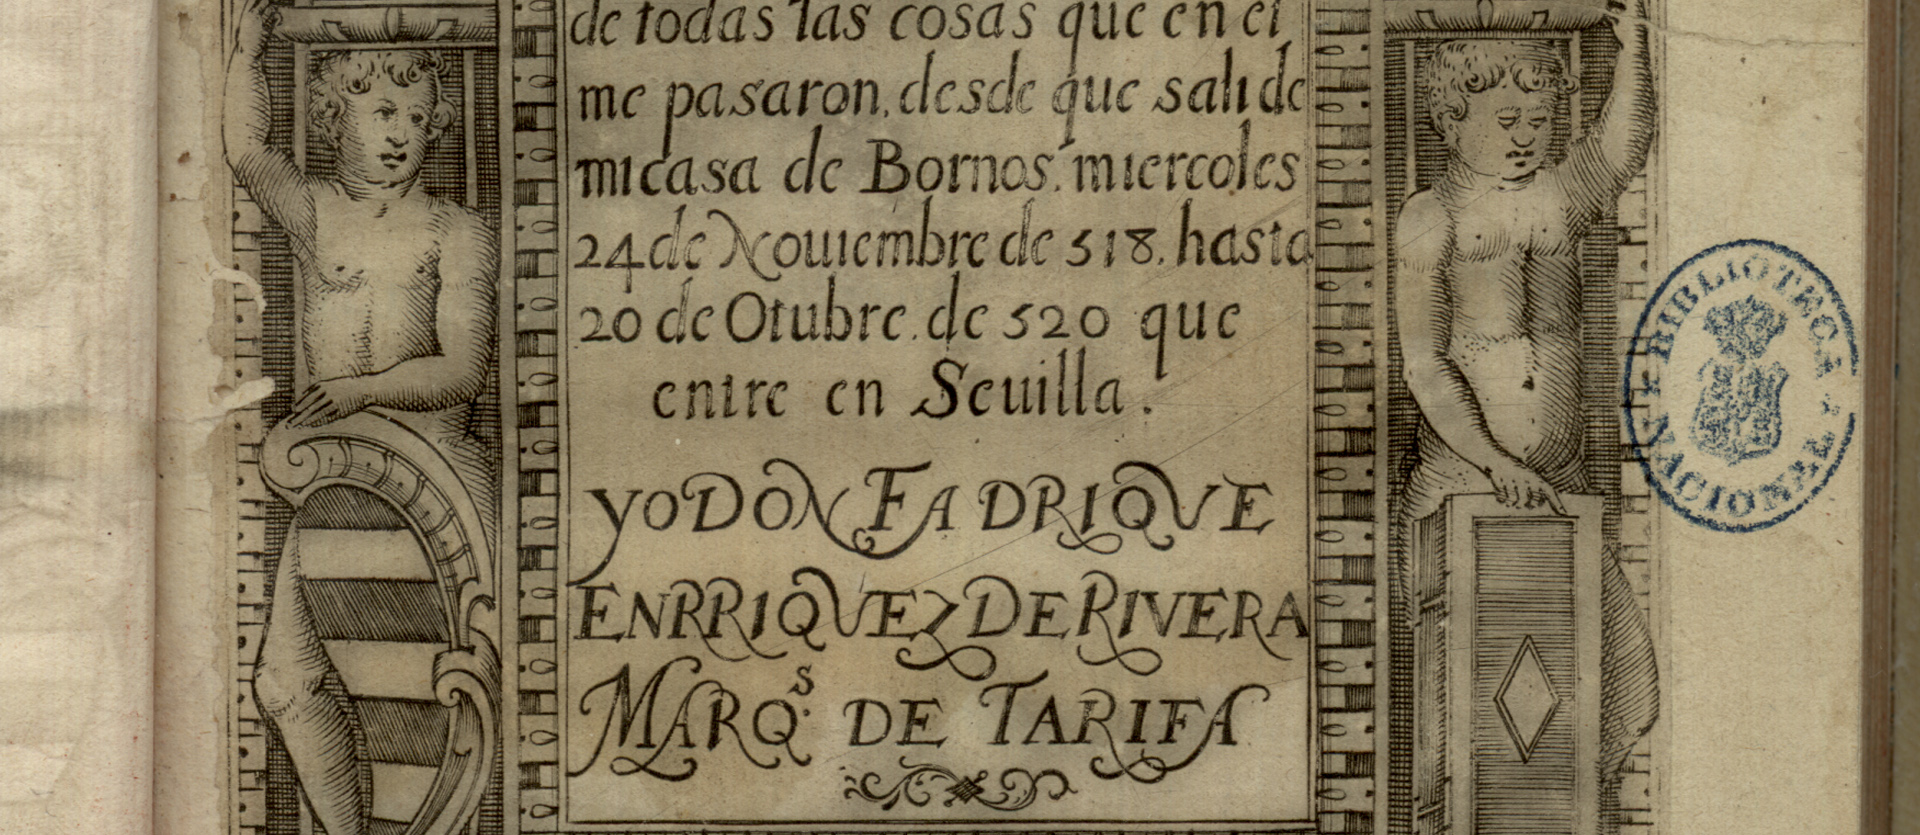 Frontispicio del Diario del Viaje a Jerusalén del I marqués de Tarifa. Biblioteca Nacional de España